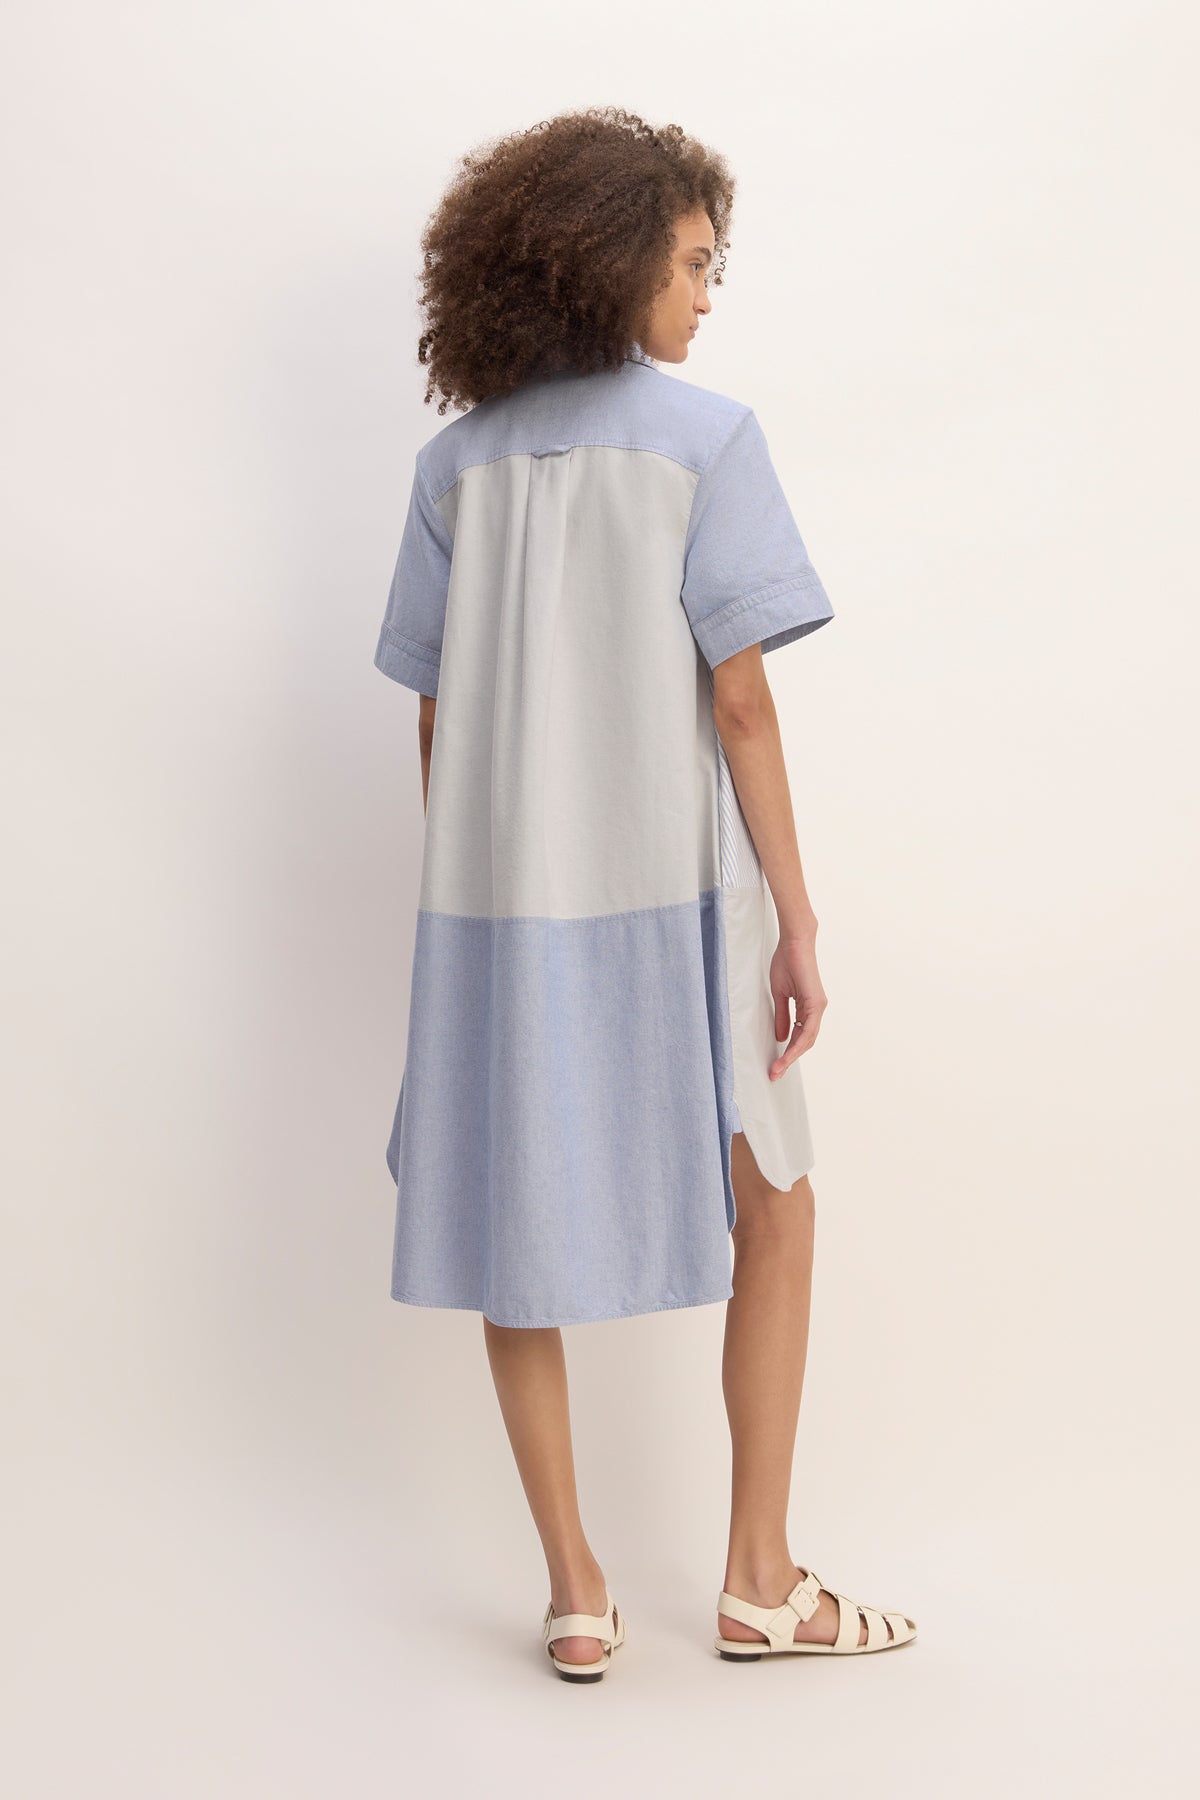 BLUE PATCHWORK SHIRT DRESS marques almeida everlane